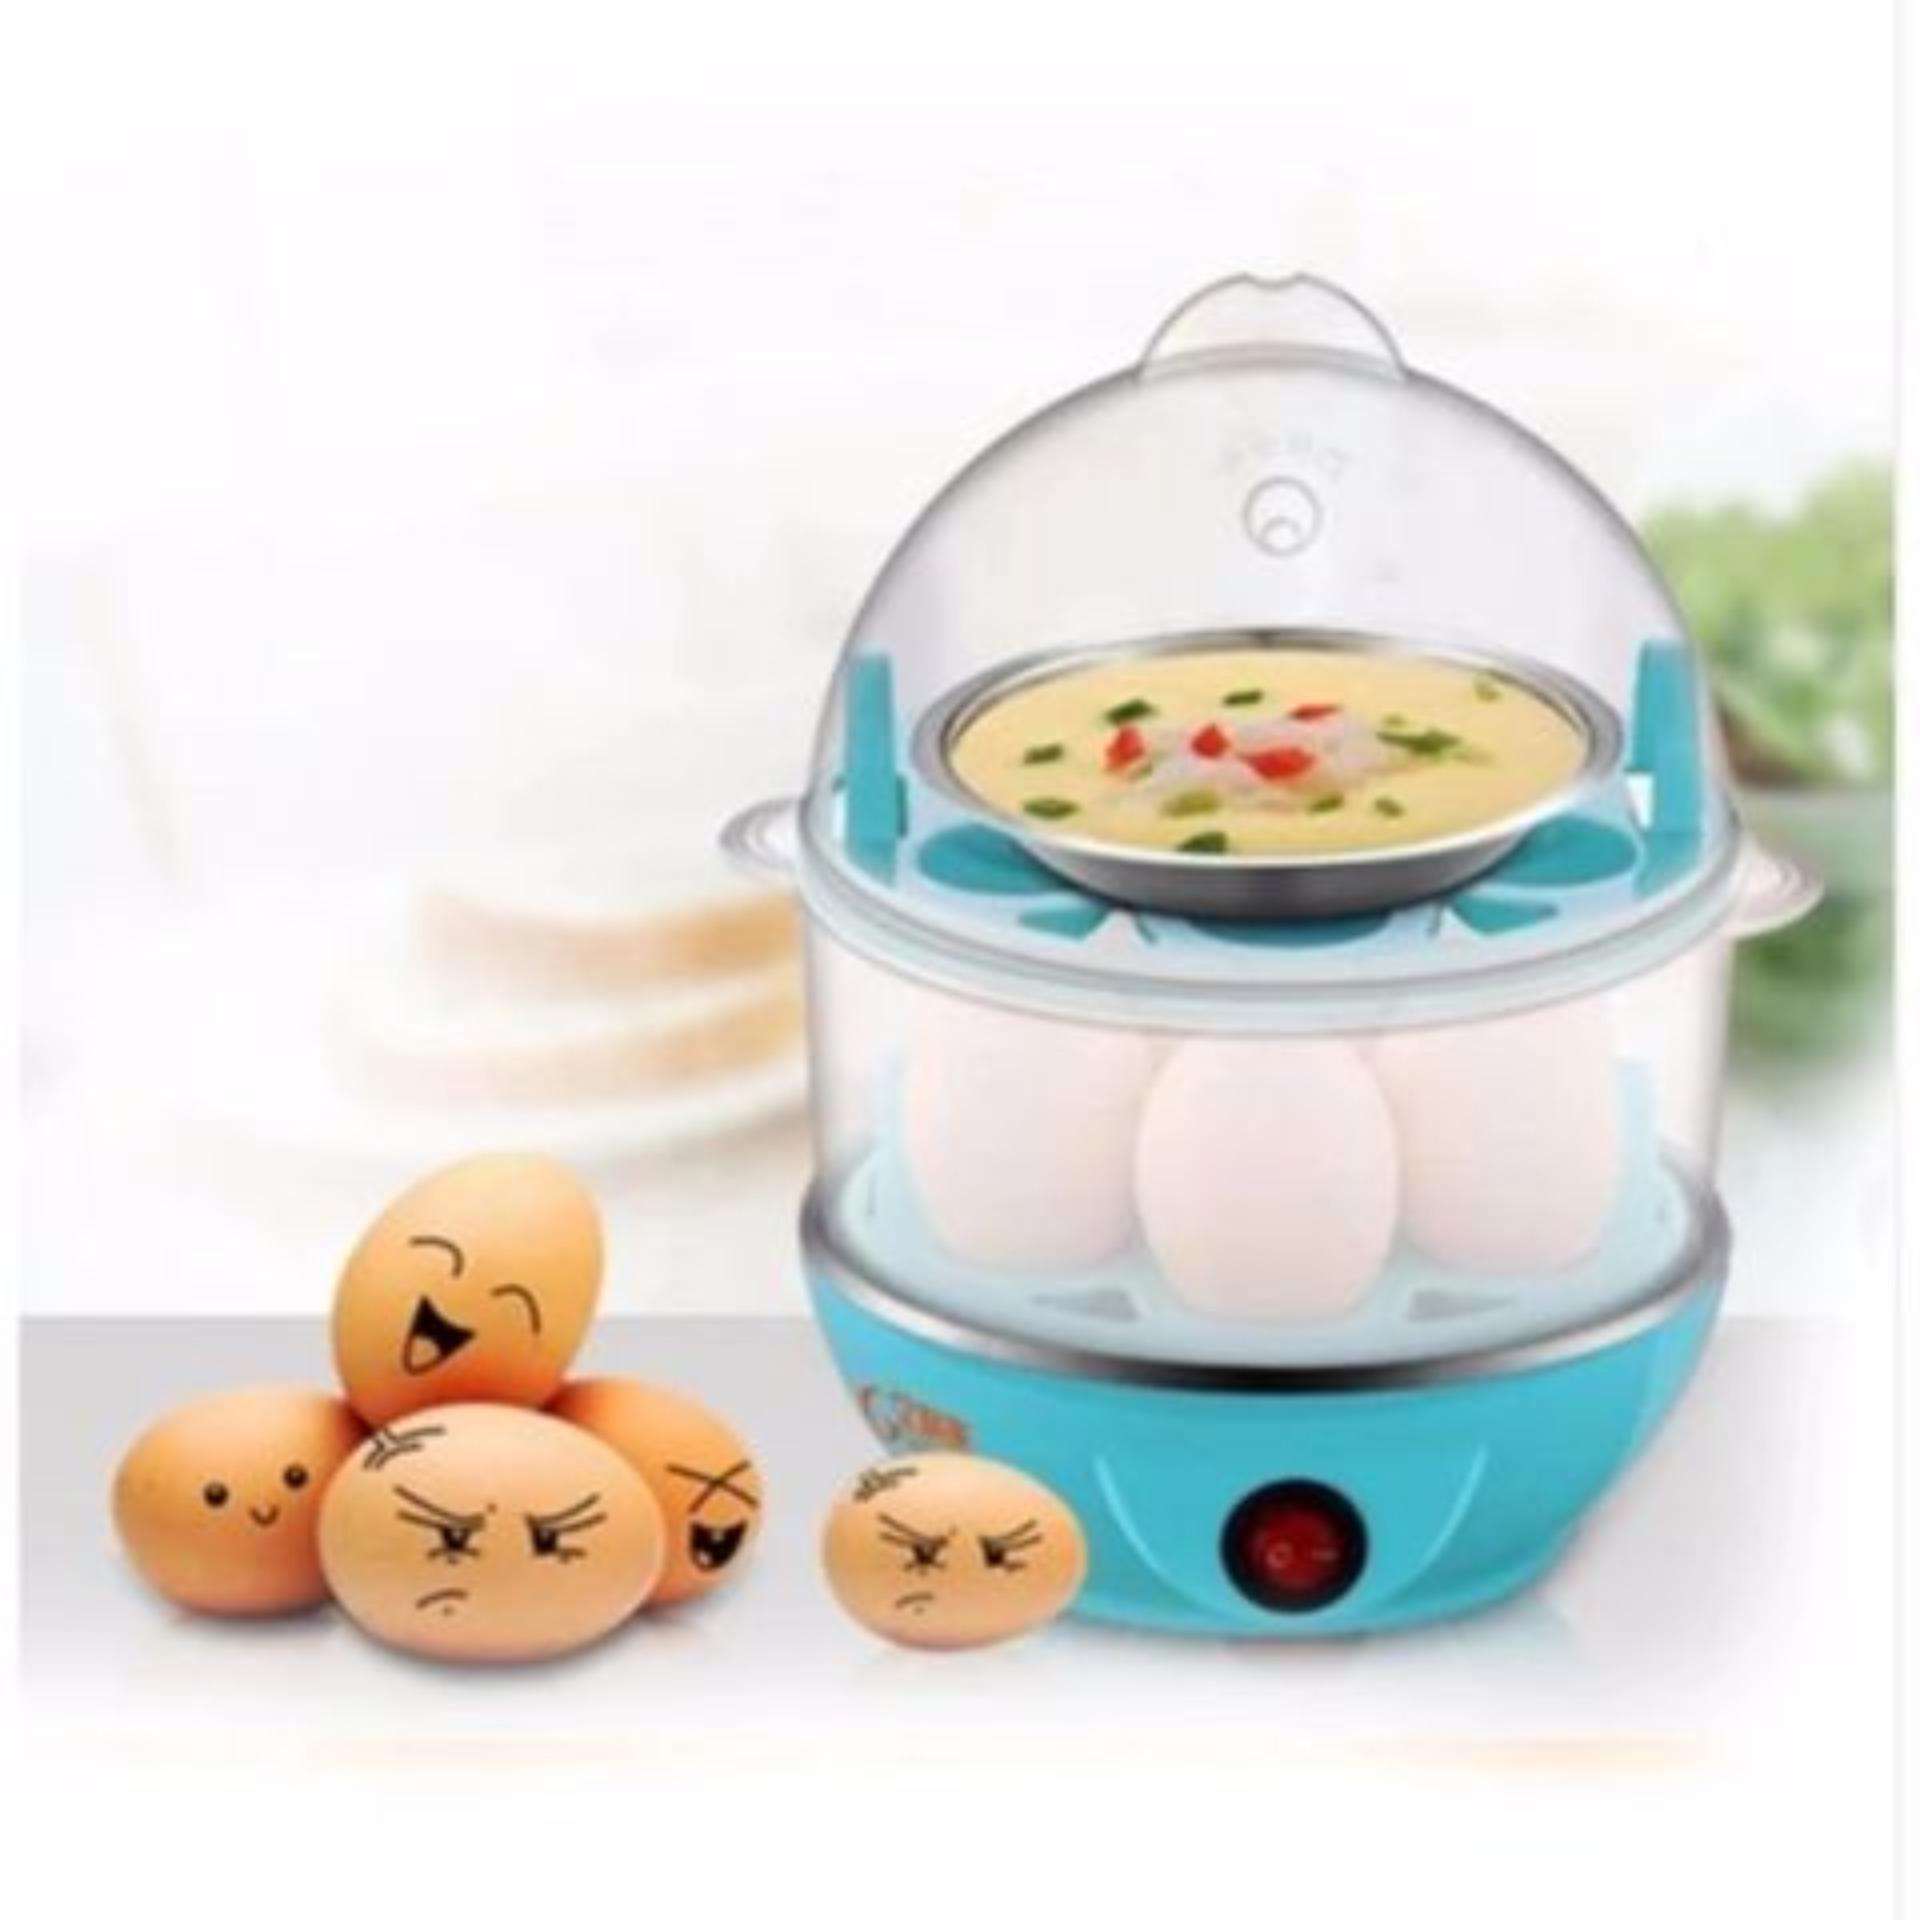 (KYF SHOP) Egg cooker เครื่องต้มไข่ เครื่องนึ่งไข่ เครื่องต้มไข่ไฟฟ้า นึ่งขนมปัง นึ่งไก่ นึ่งผัก และประกอบอาหารอื่นๆ สี ฟ้า สี ฟ้า